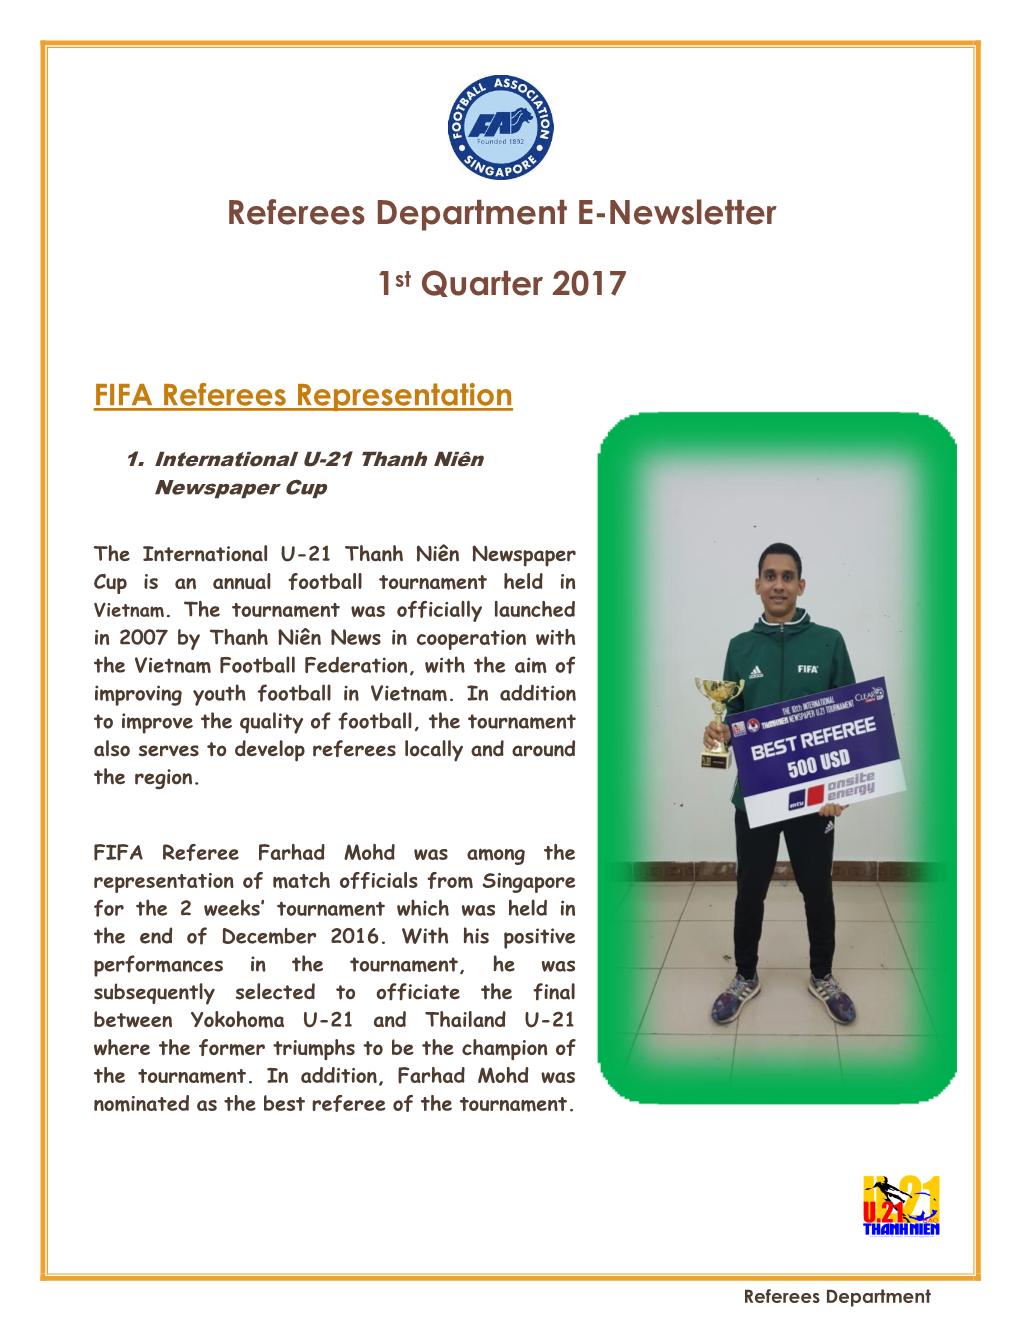 Referees Department E-Newsletter 1St Quarter 2017